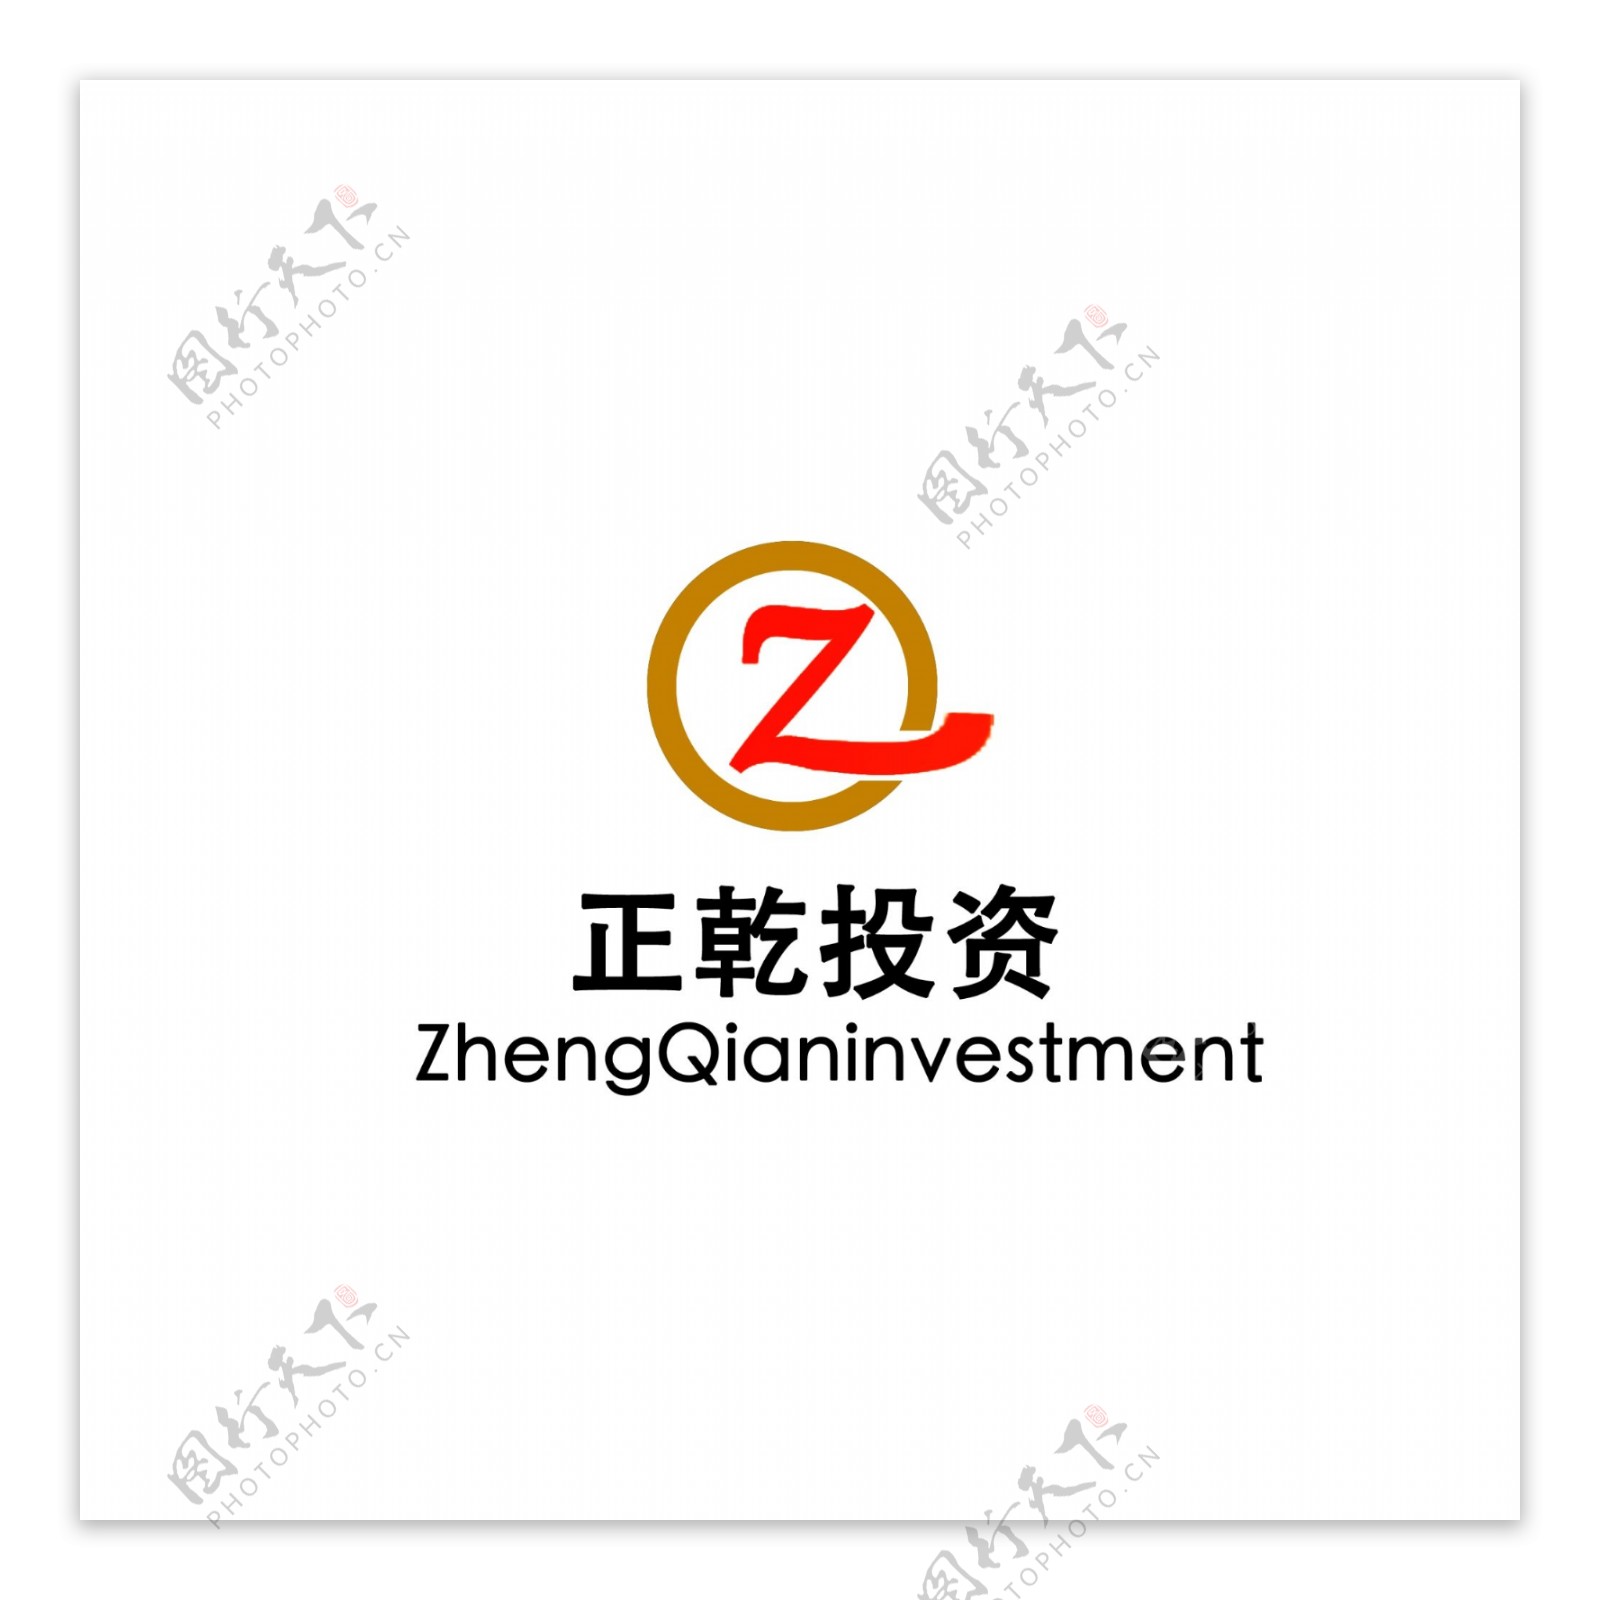 投资logo